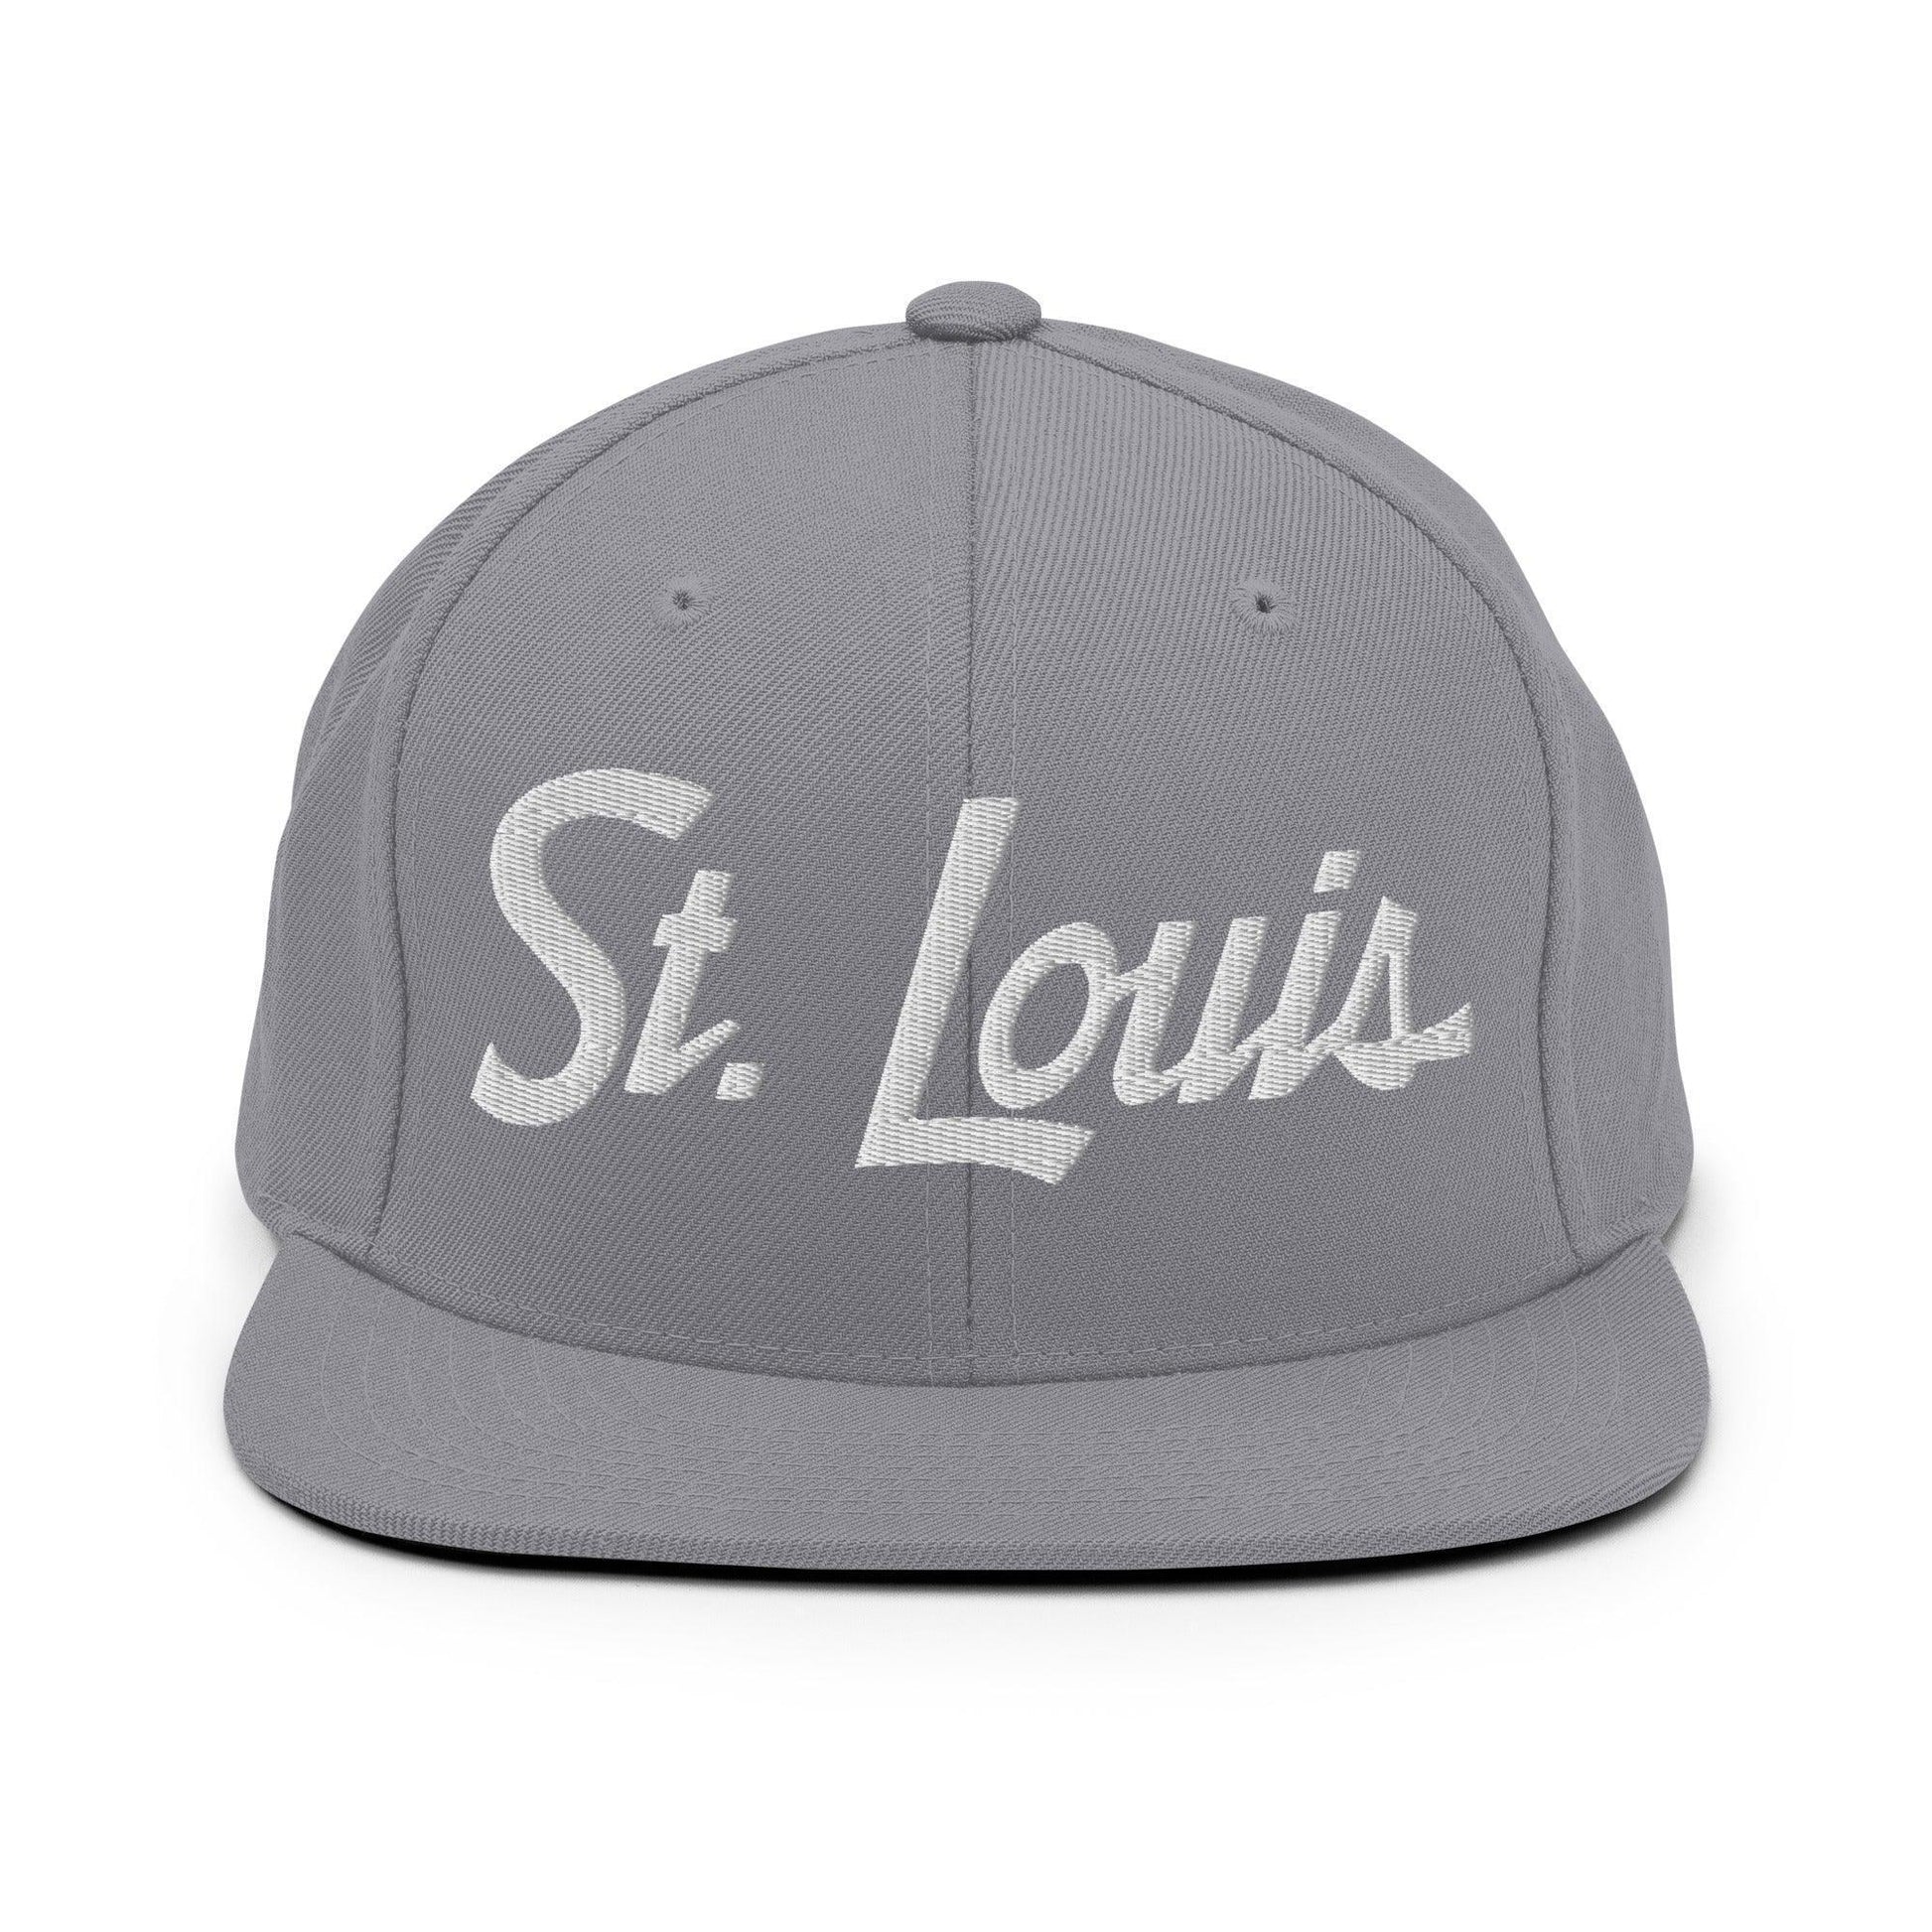 St. Louis Script Snapback Hat Silver